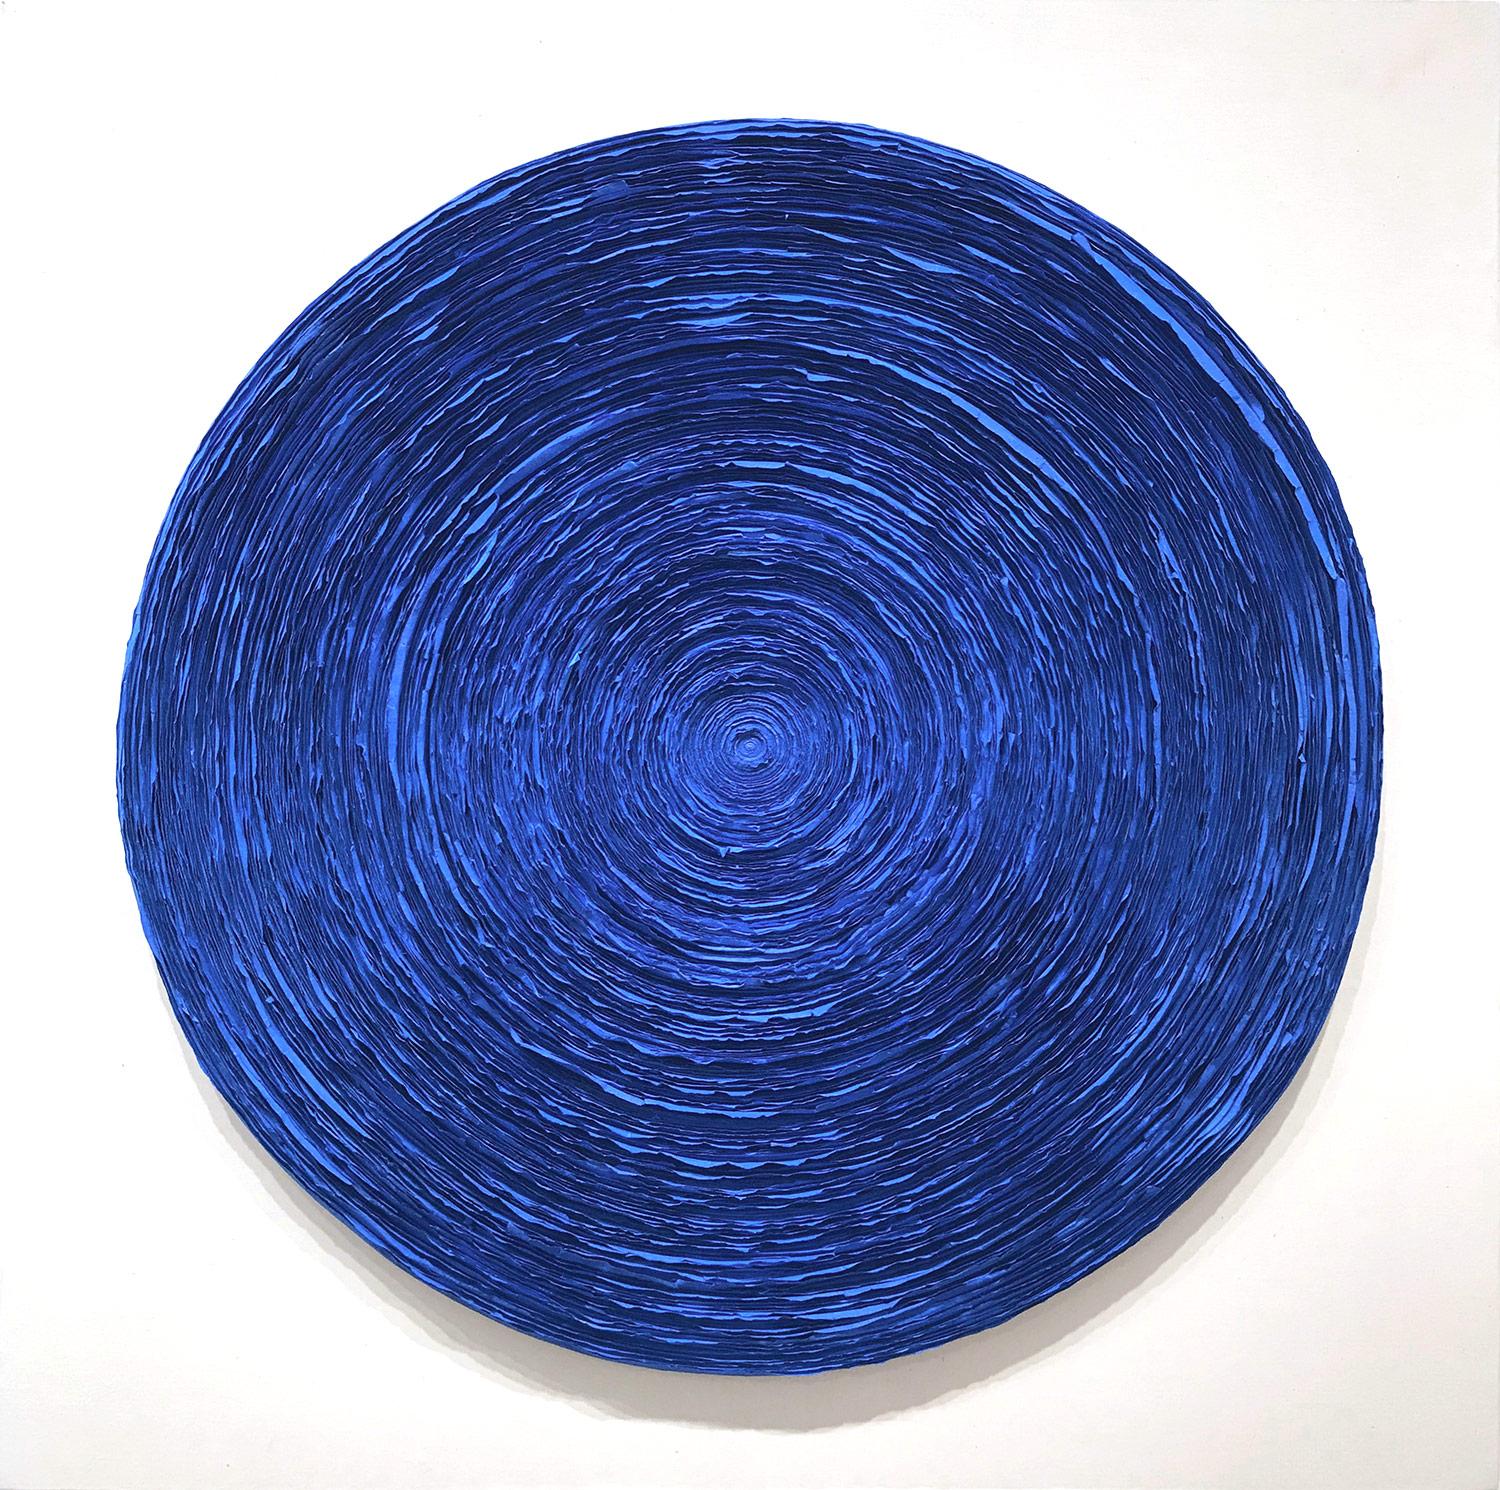 Lee Ok-nam Abstract Painting – Zeitgenössisches Gemälde „Wave (Electric Blue)“ aus Mischtechnik auf Tafel